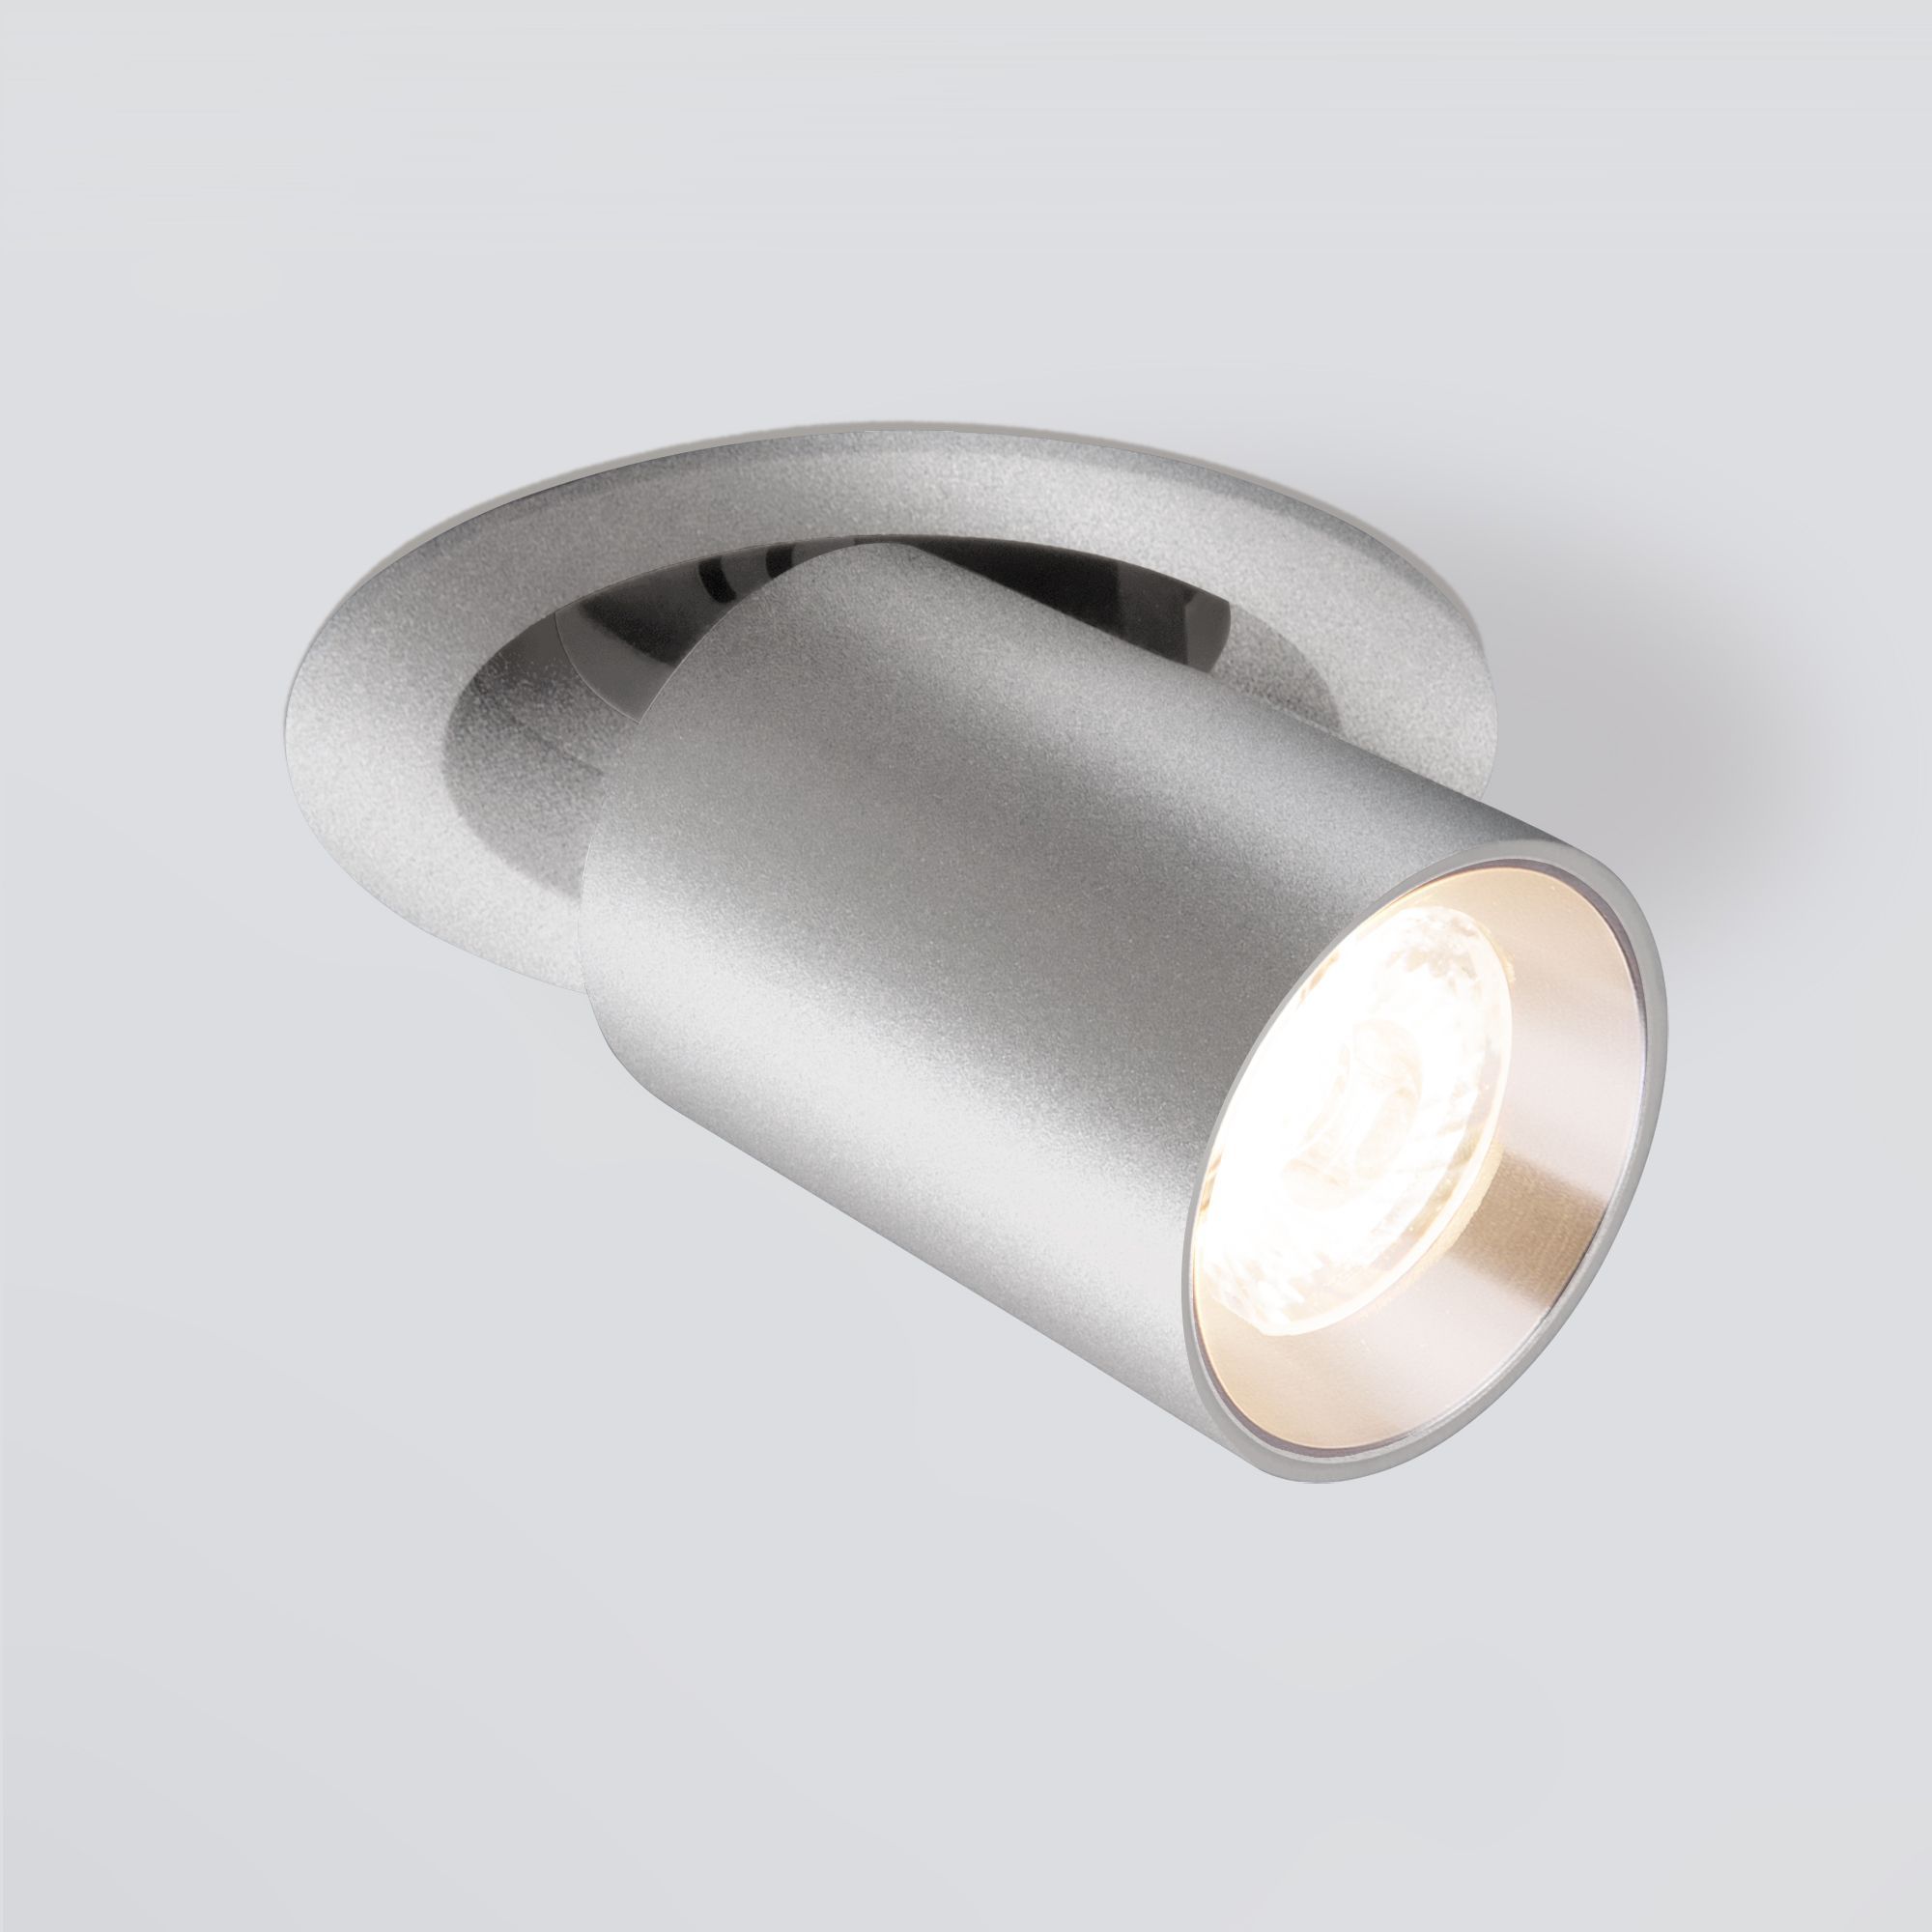 Встраиваемый точечный светодиодный светильник Elektrostandard Pispa 9917 LED 10W 4200K серебро. Фото 1